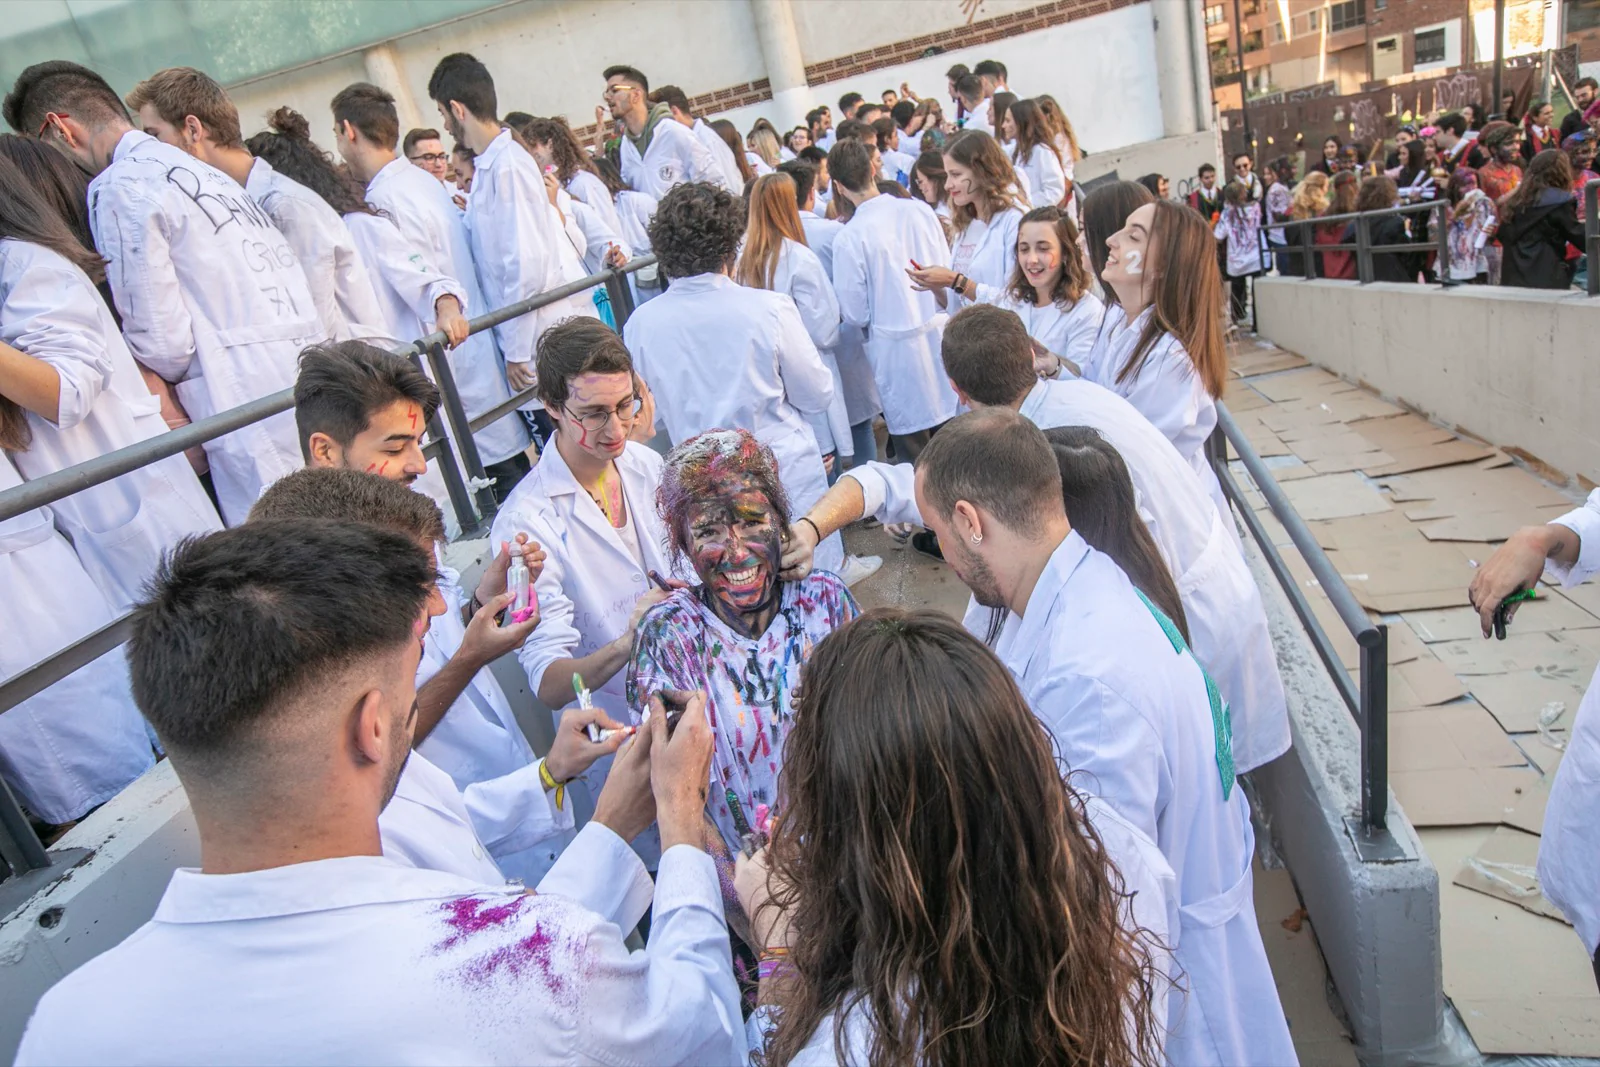 Los estudiantes de Medicina celebran de esta manera uno de sus días grandes